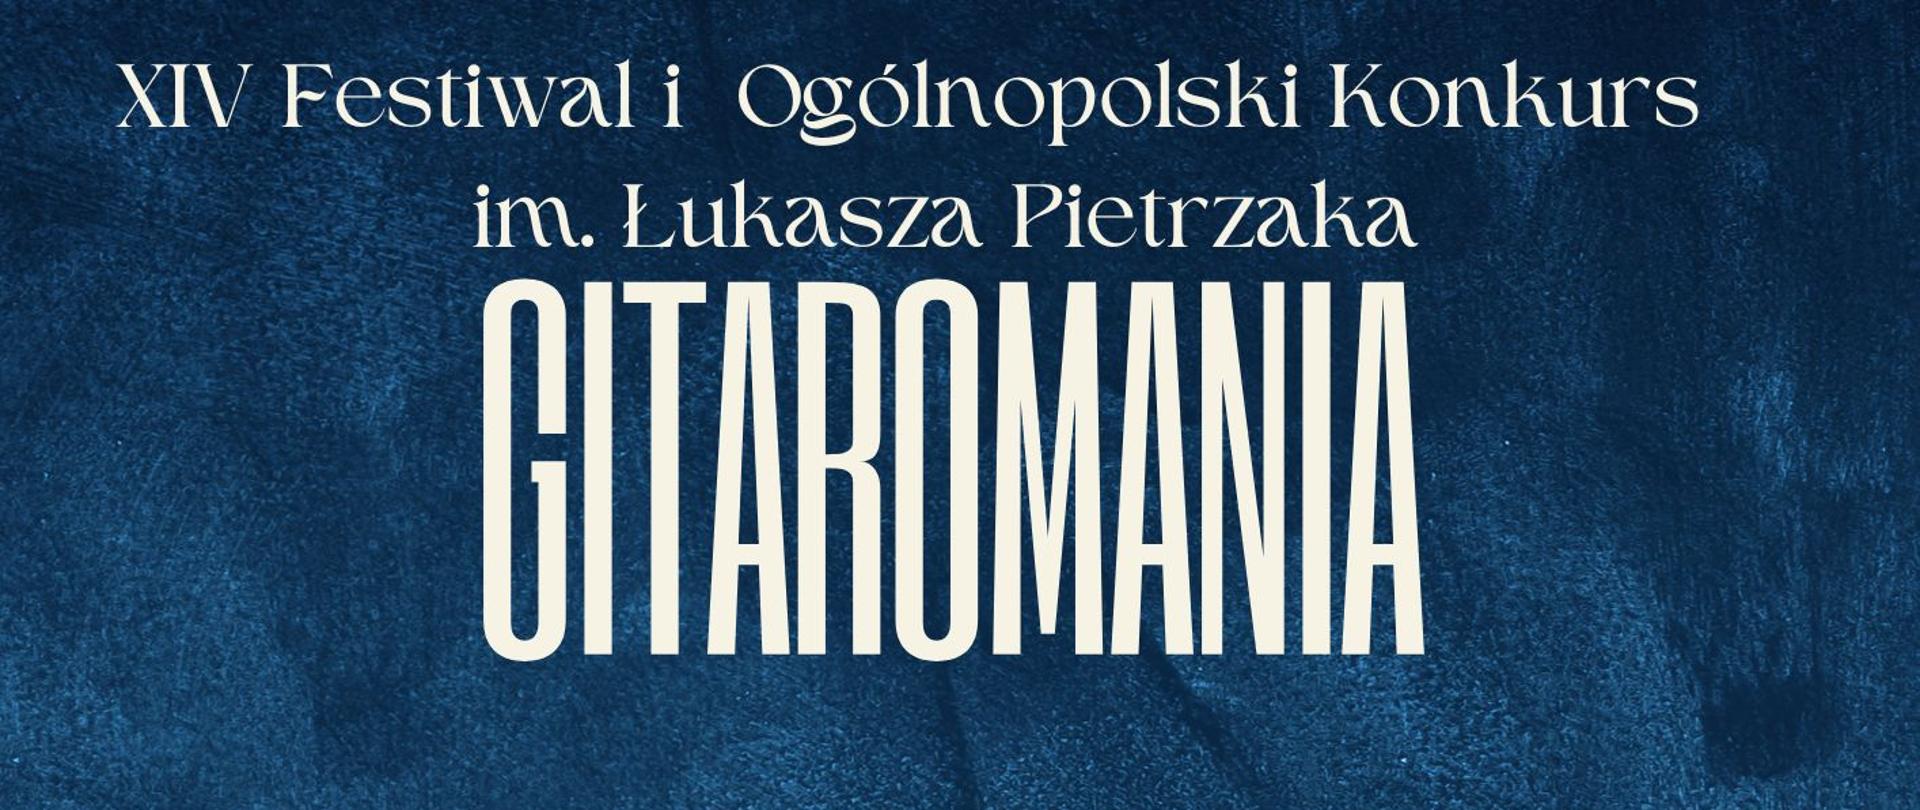 Plakat na granatowym tle. Na górze znajduje się biały napis XIV Festiwal i Ogólnopolski Konkurs im. Łukasza Pietrzaka , a pod spodem - napis GITAROMANIA.